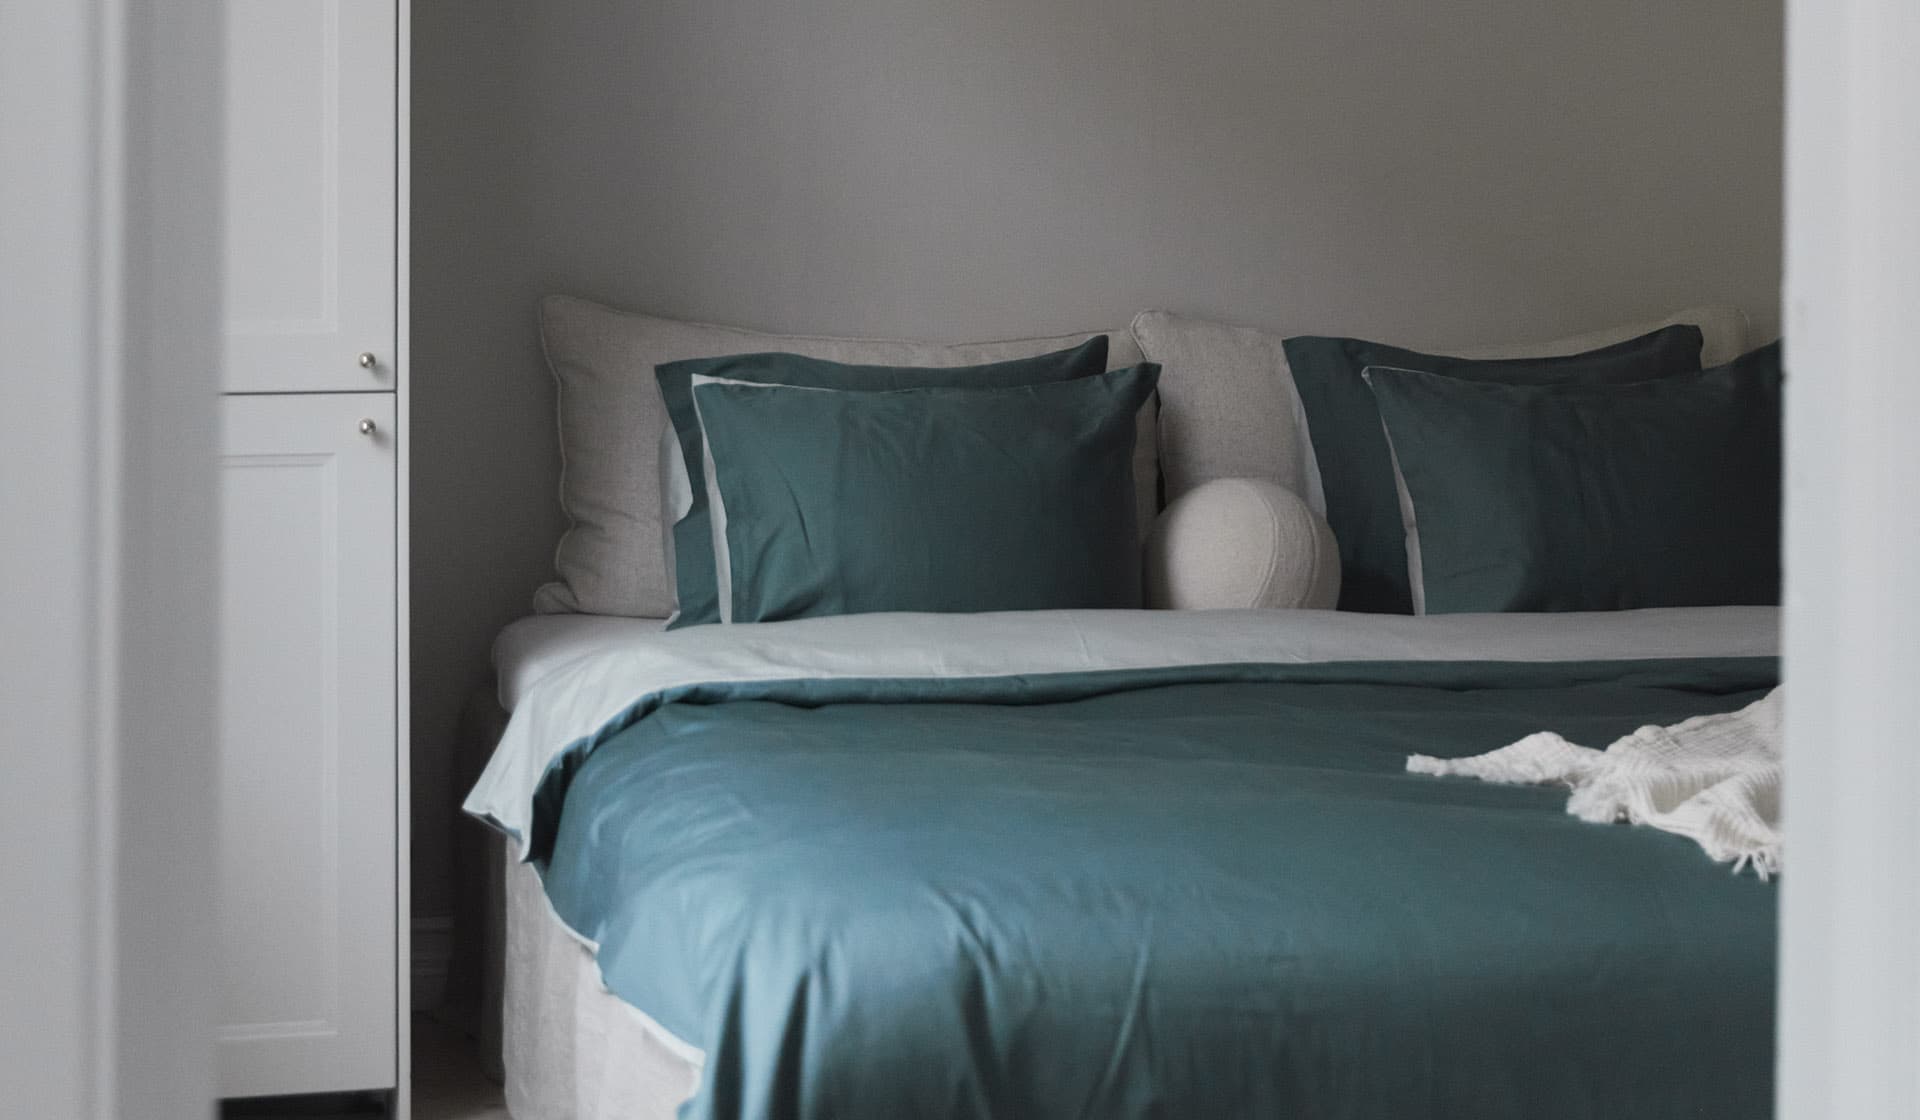 Sängkläder, handdukar, plädar, filtar i ekologisk bomull online. Köp nya hemtextilier från Alva